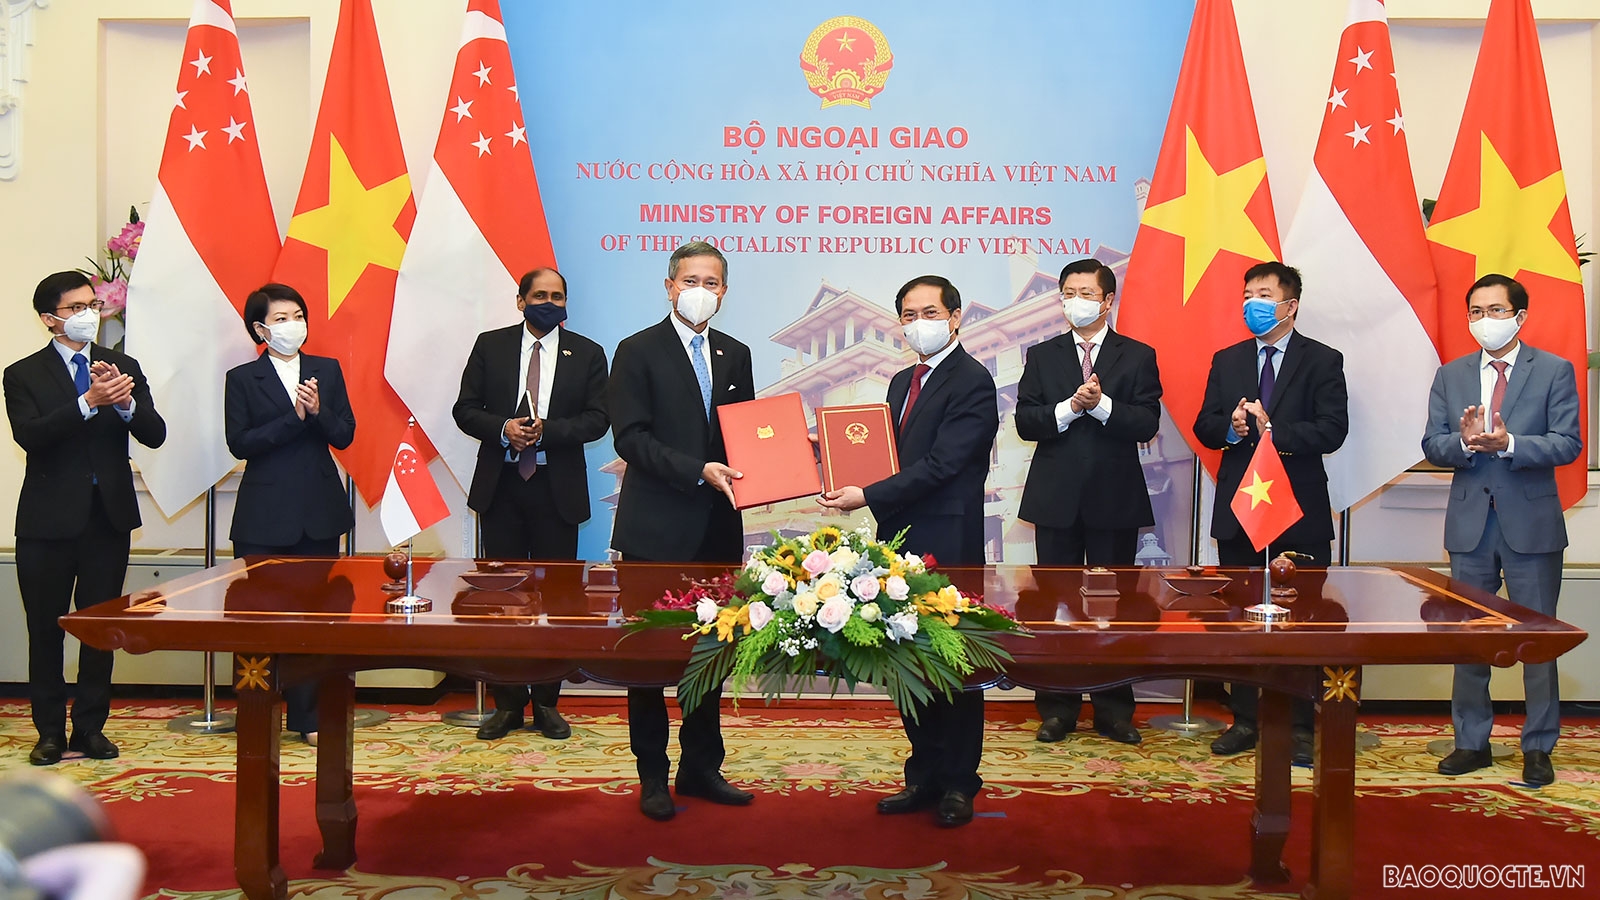 Kết thúc hội đàm, hai Bộ trưởng Ngoại giao đã ký Thỏa thuận hợp tác về đào tạo cho cán bộ cao cấp của Đảng Cộng sản Việt Nam giai đoạn 2021-2023, góp phần quan trọng vào việc nâng cao năng lực cho đội ngũ cán bộ cao cấp của Việt Nam.